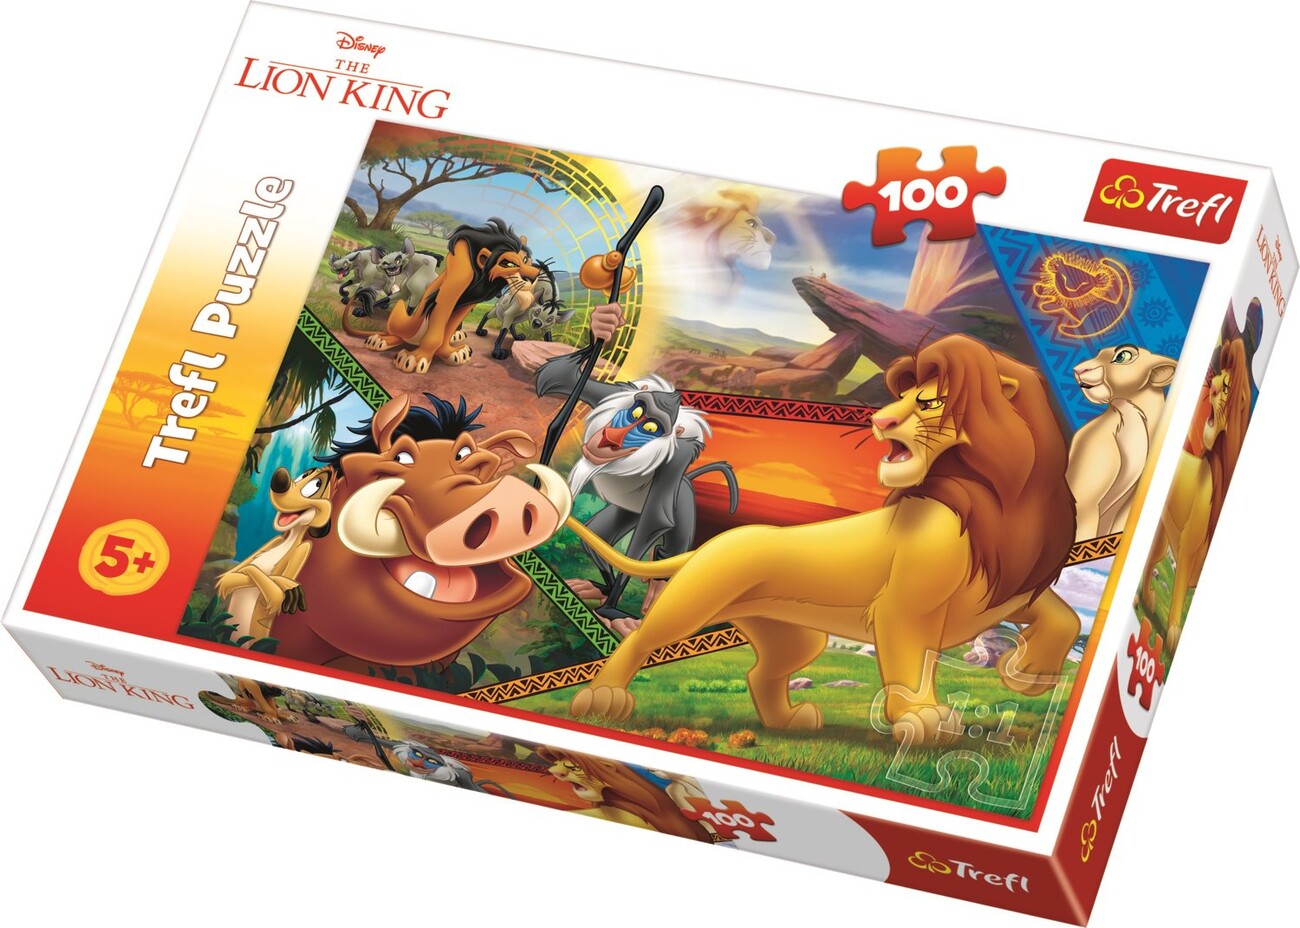 Le Roi lion - Liste de 17 puzzles 